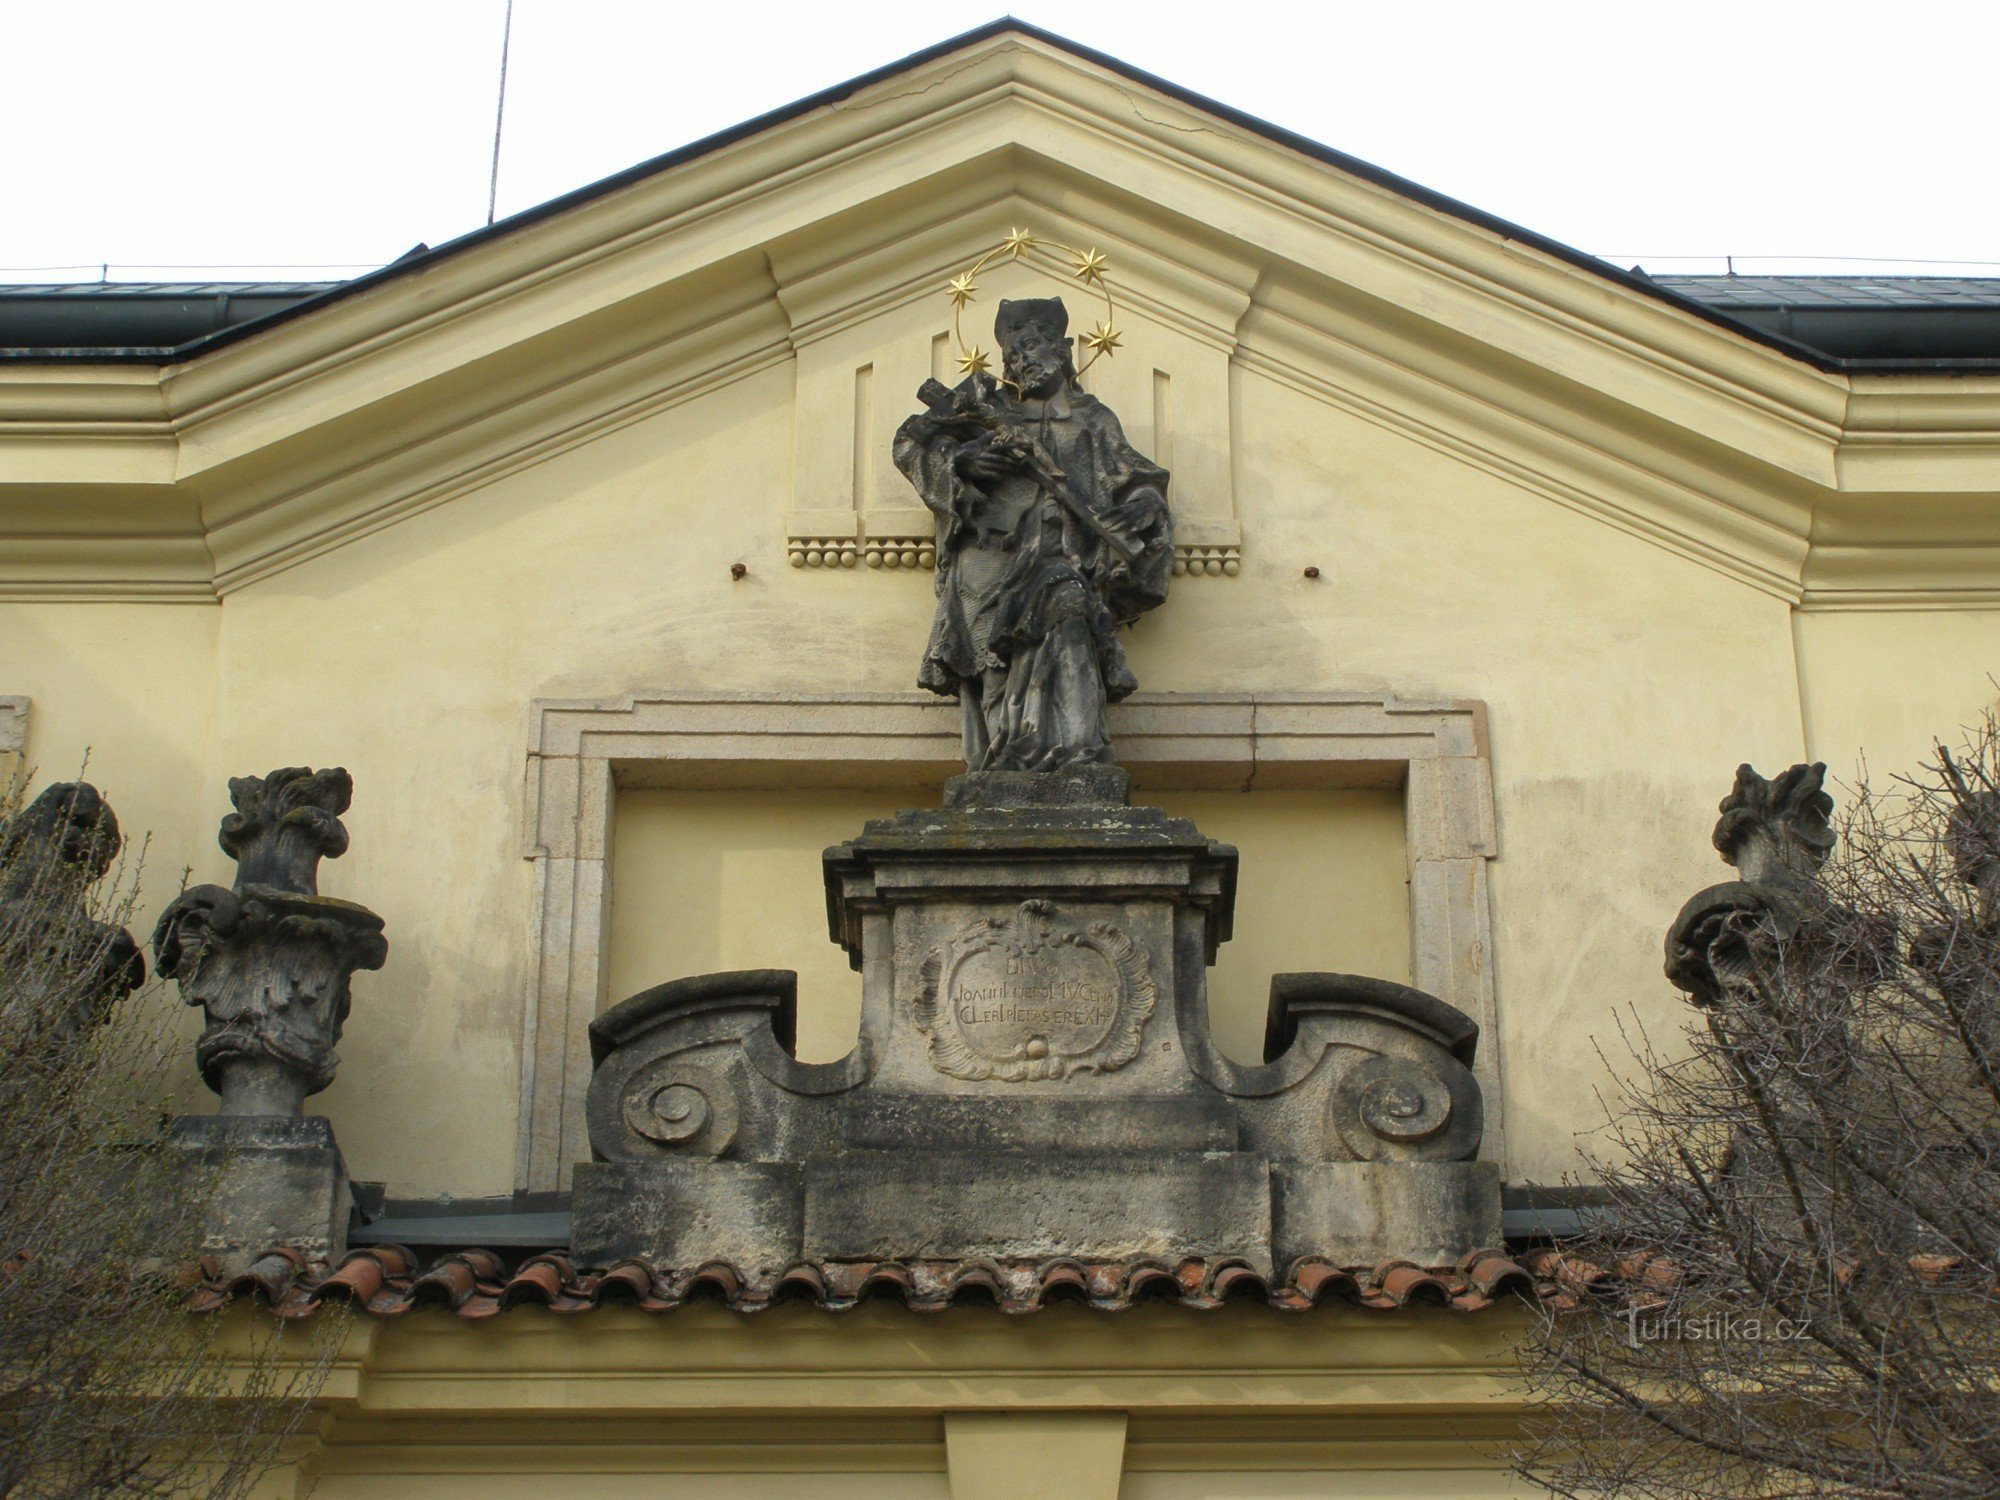 Hradec Králové – Hội trường âm nhạc thành phố